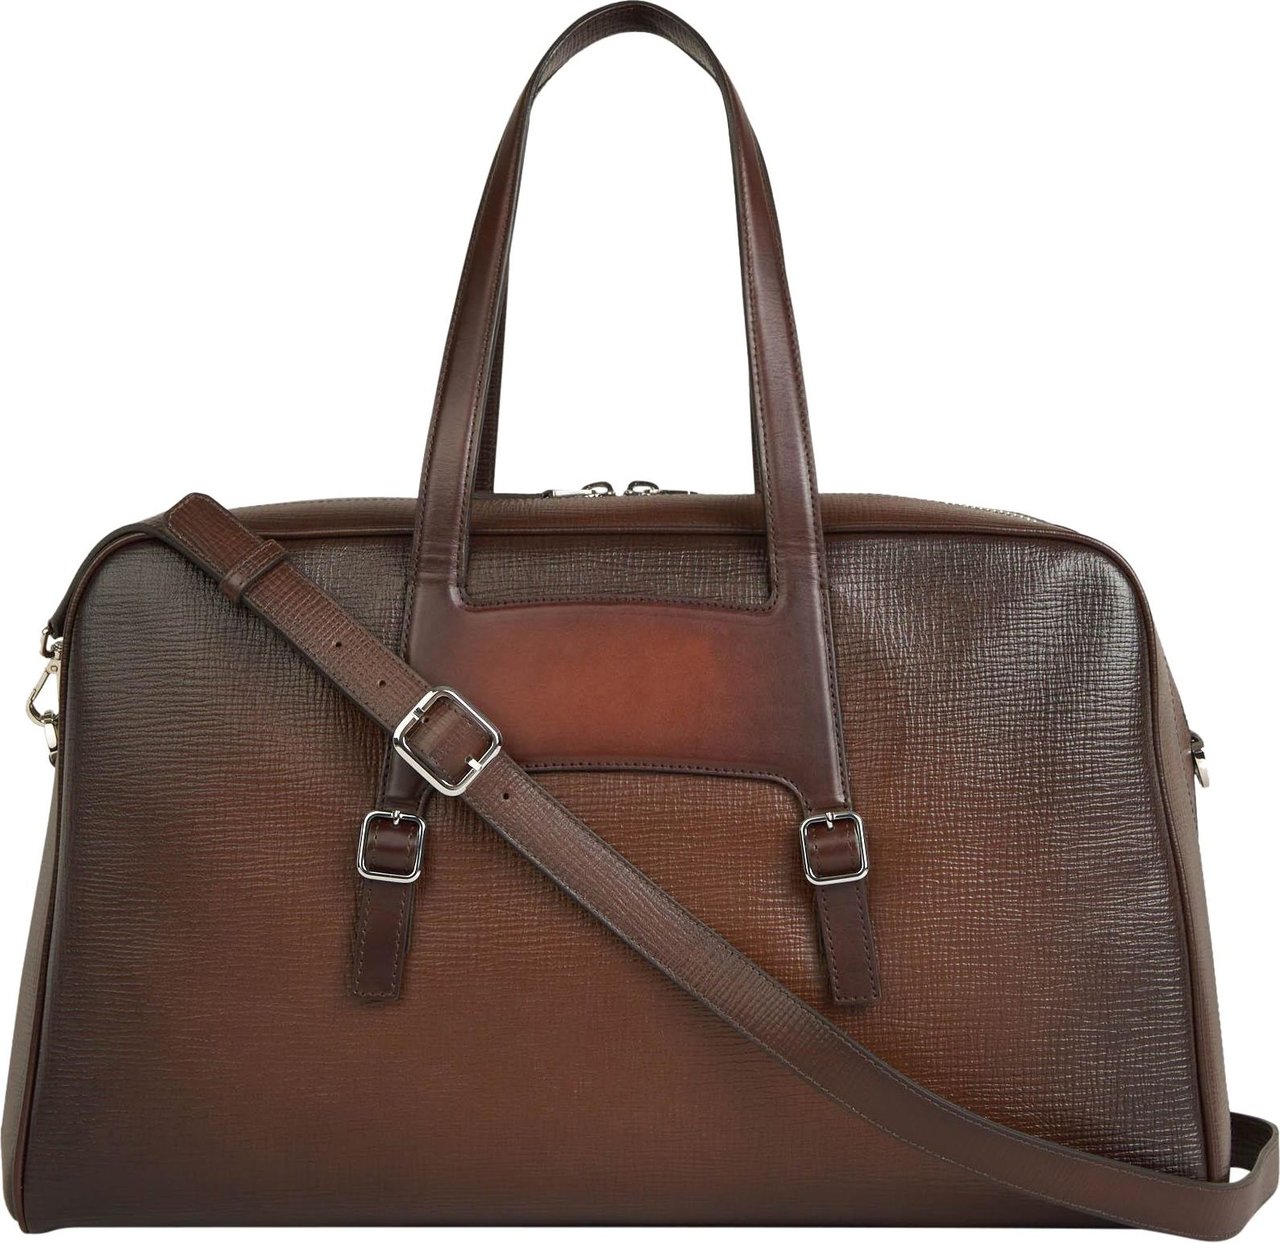 Santoni Leather Travel Bag Beige